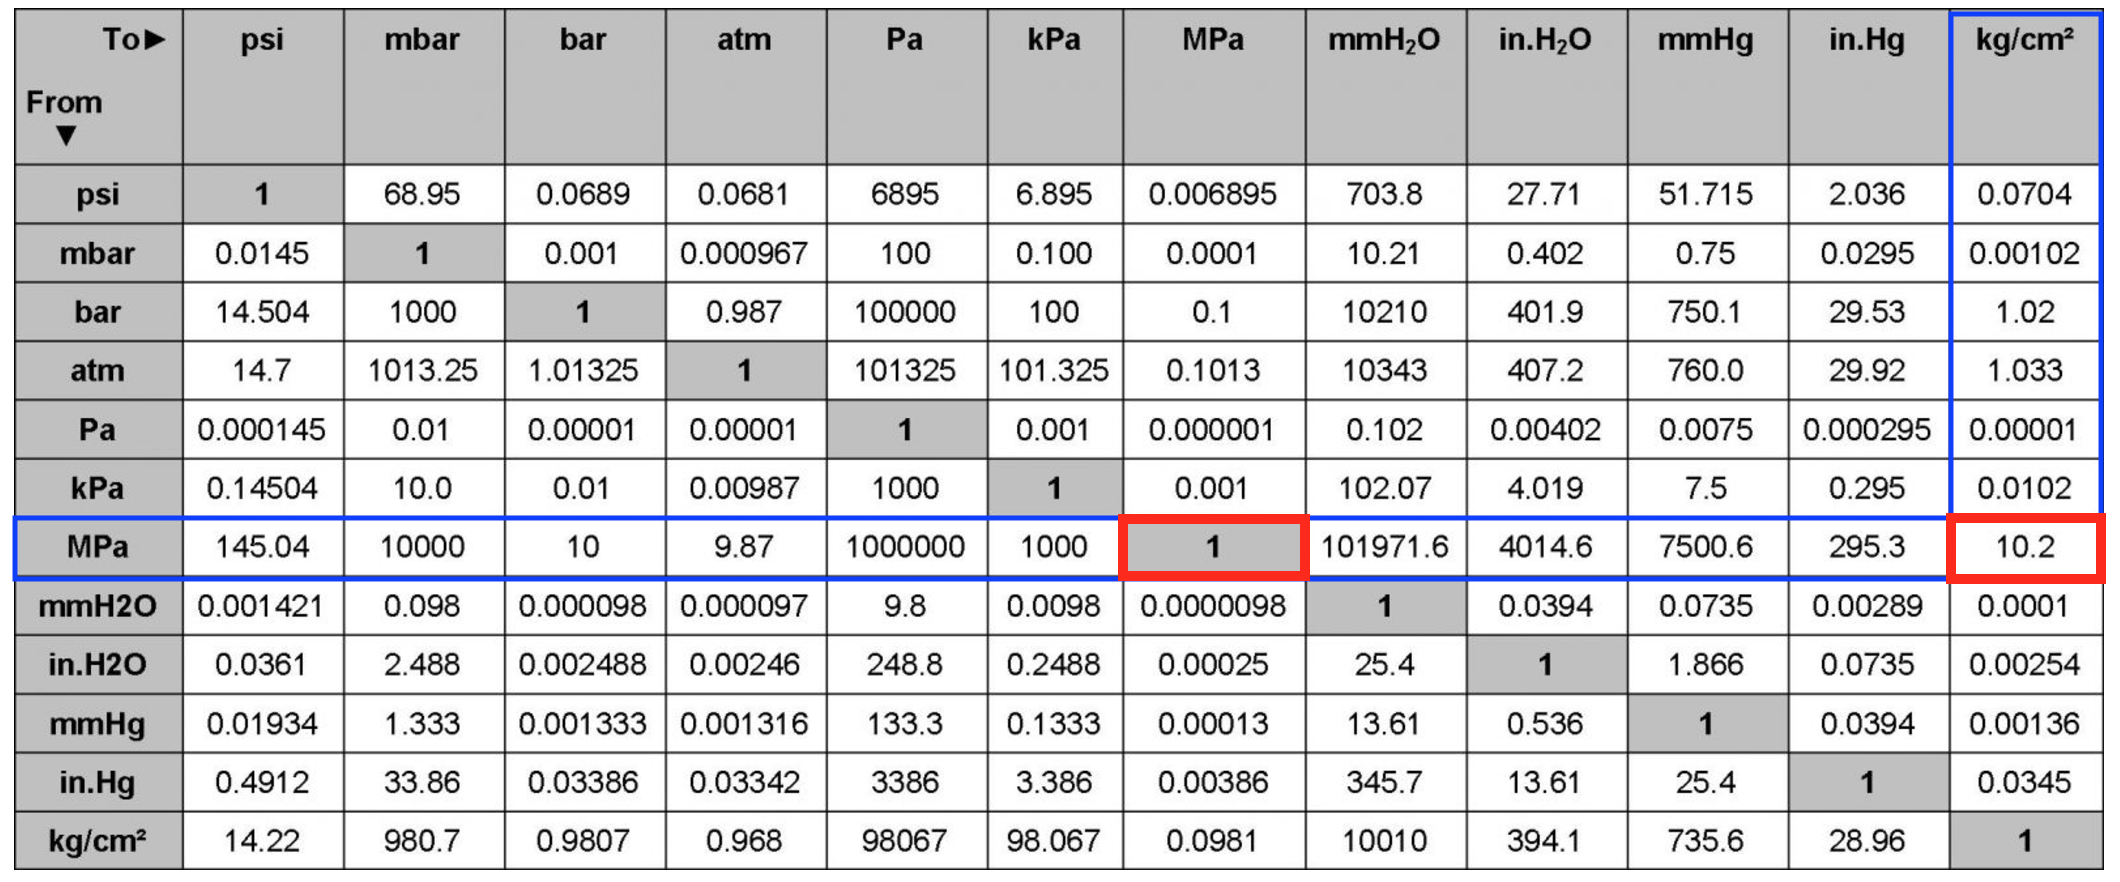 Гига паскаль. Единицы измерения давления psi. Таблица давления МПА В бар и атм. 1 MPA В кгс/см2. Единицы давления перевод таблица.